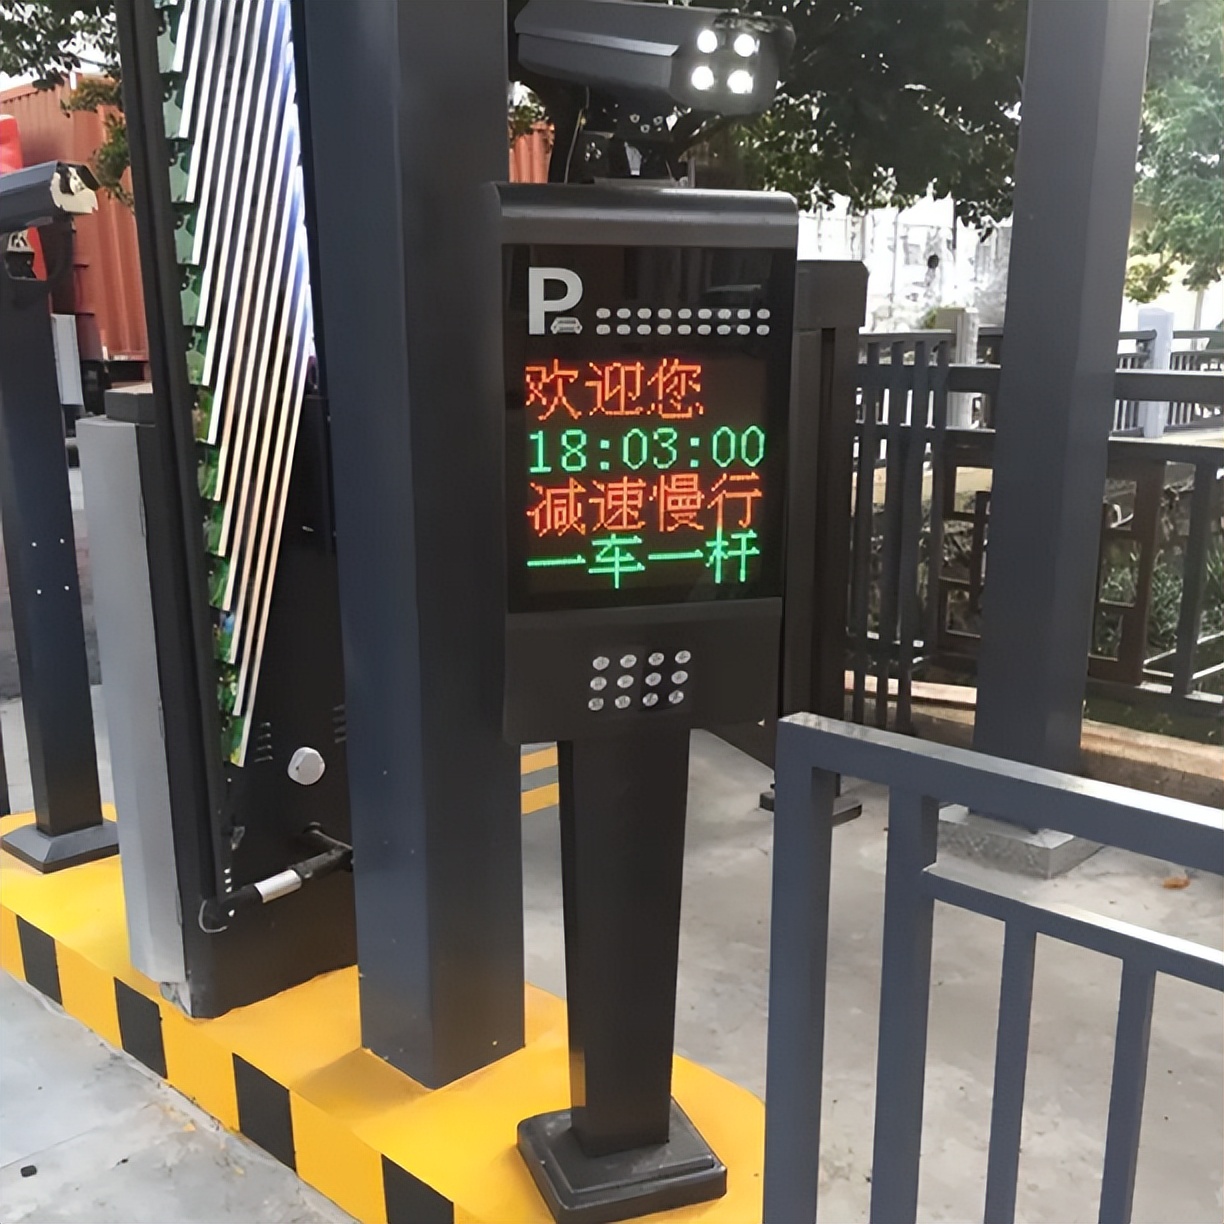 公司新开发了一套无人智慧停车收费系统